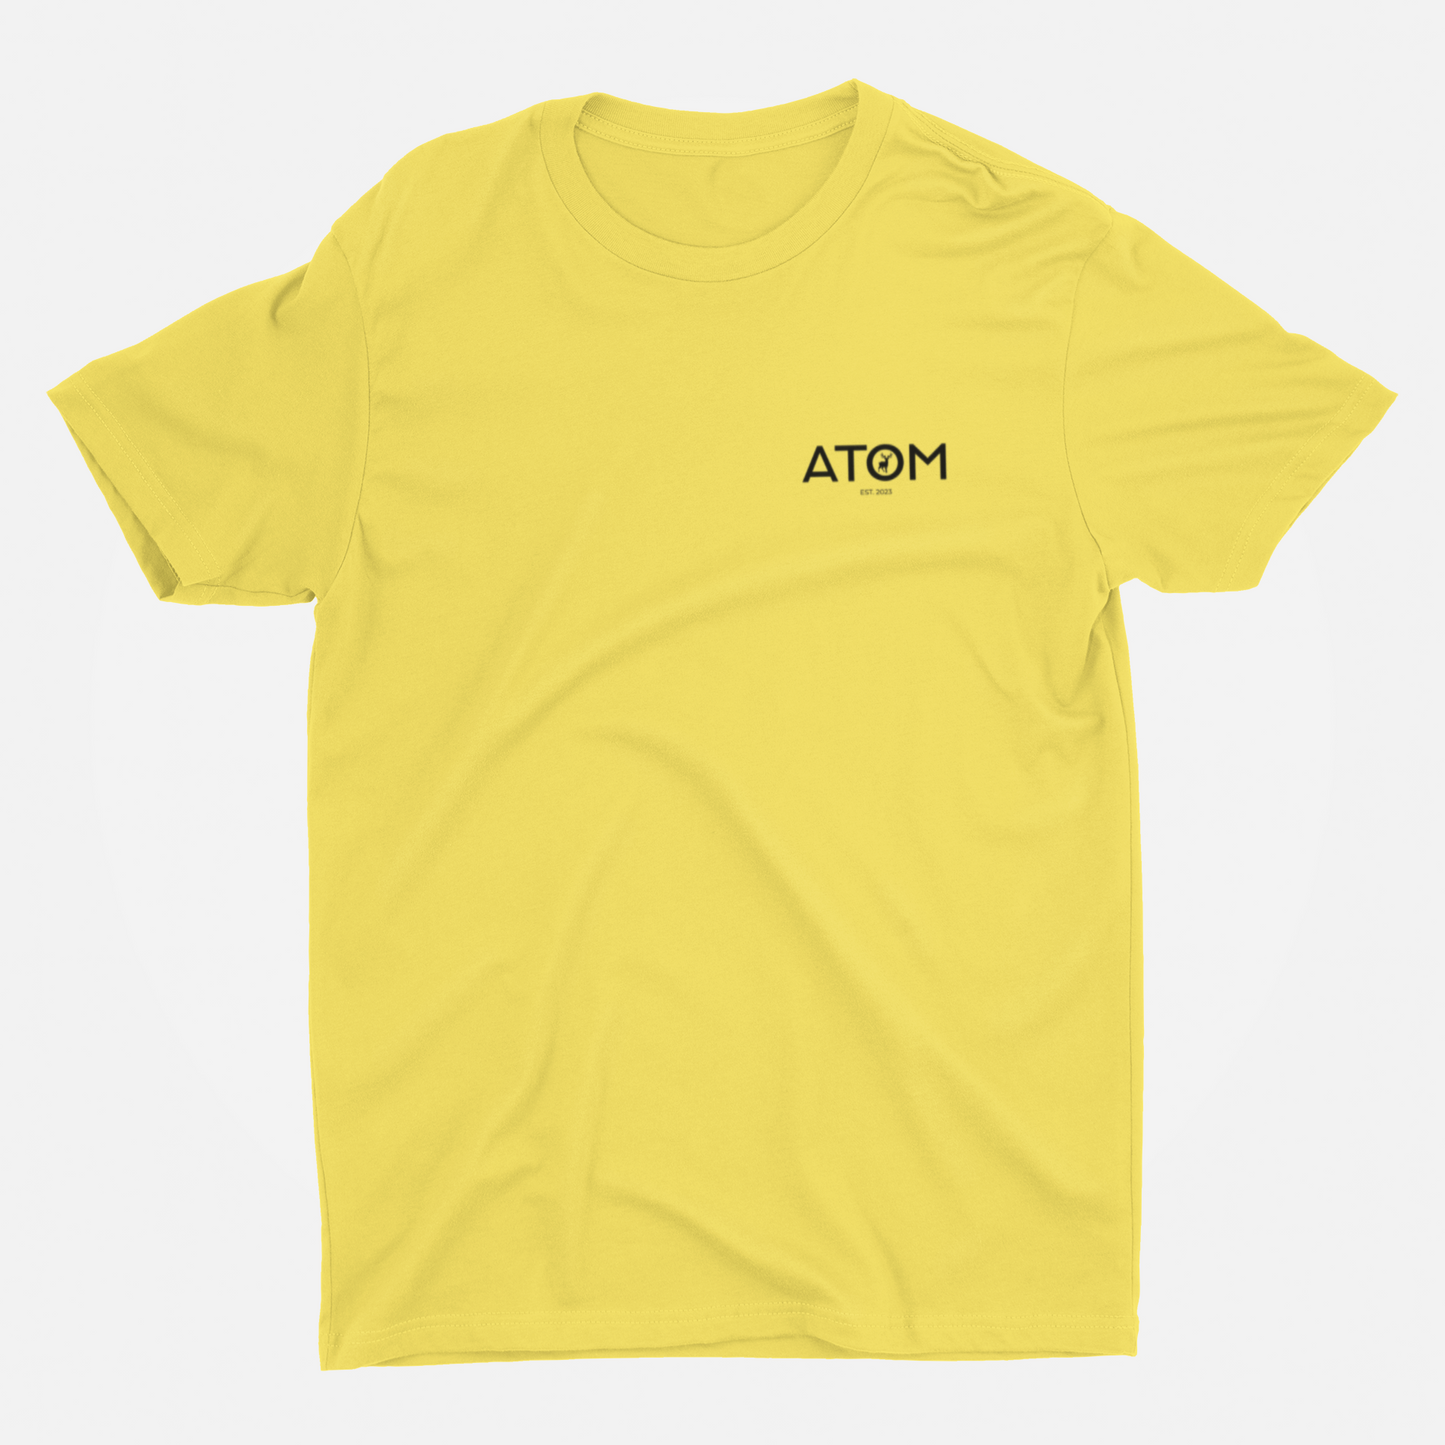 ATOM Logo Basic Lemon Yellow Round Neck T-Shirt for Men.